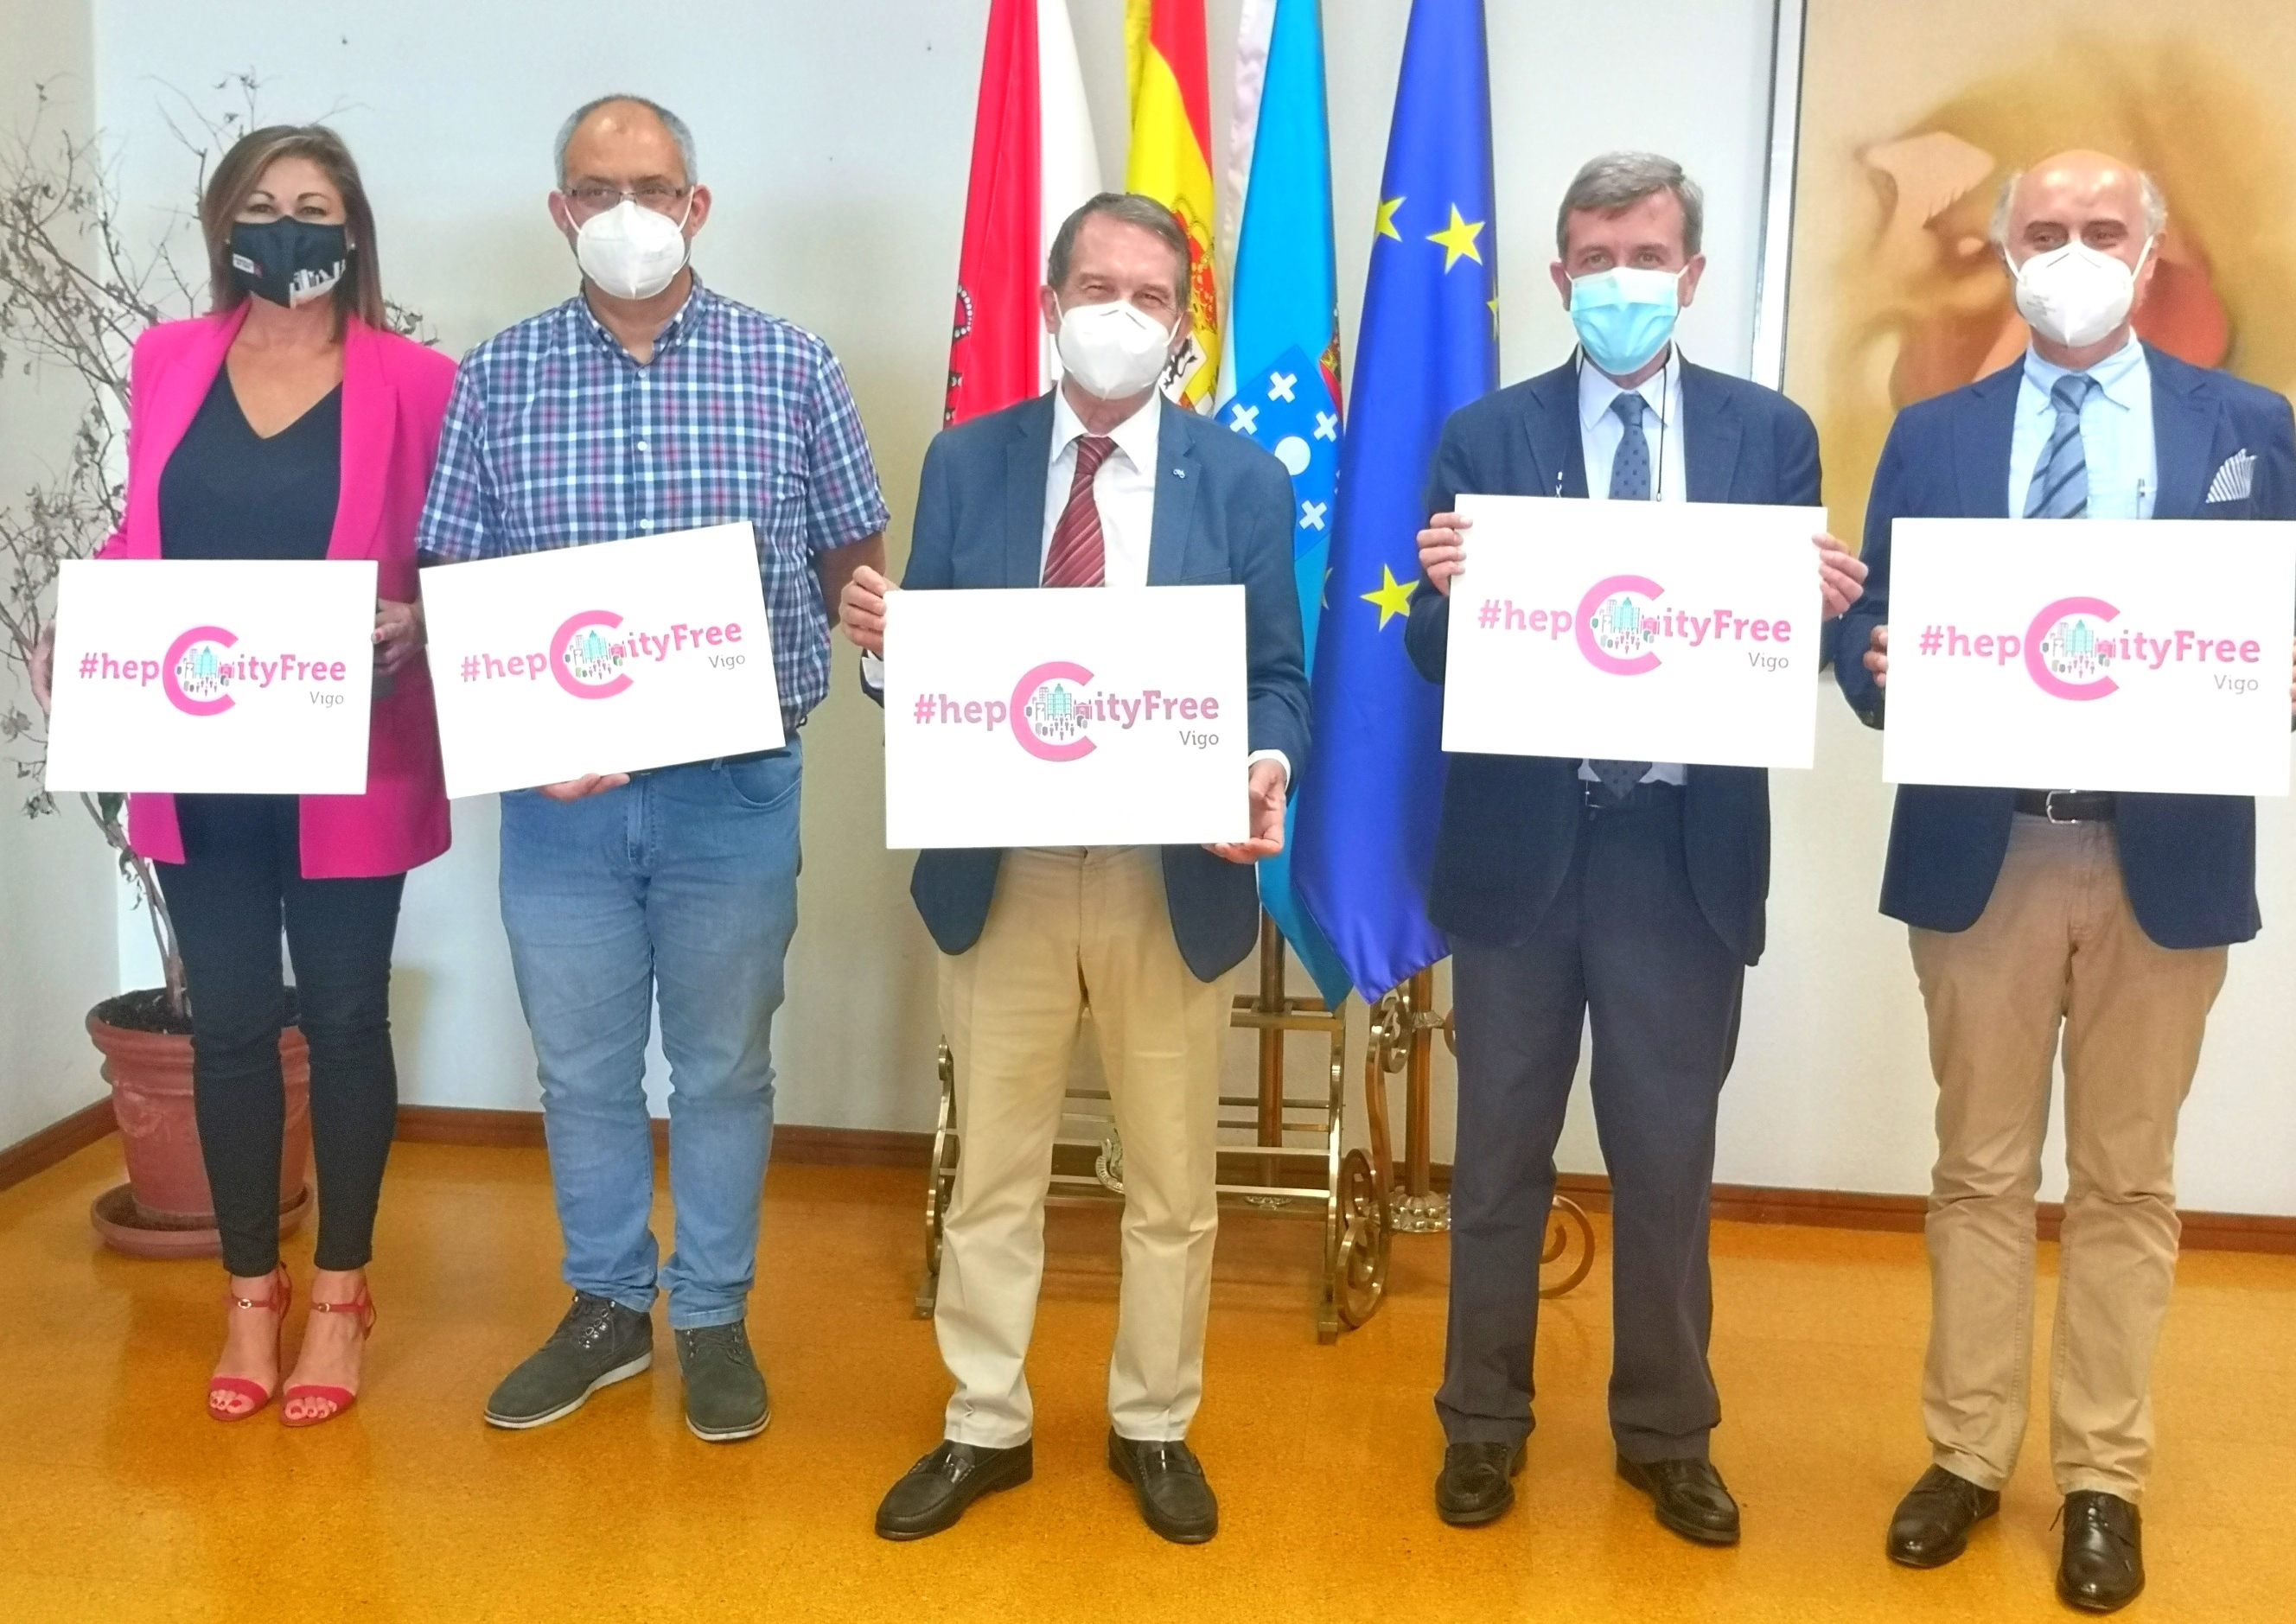 Vigo se suma al movimiento Ciudades Libres de Hepatitis C, #hepCityFree, para lograr la eliminación de la enfermedad en 2024